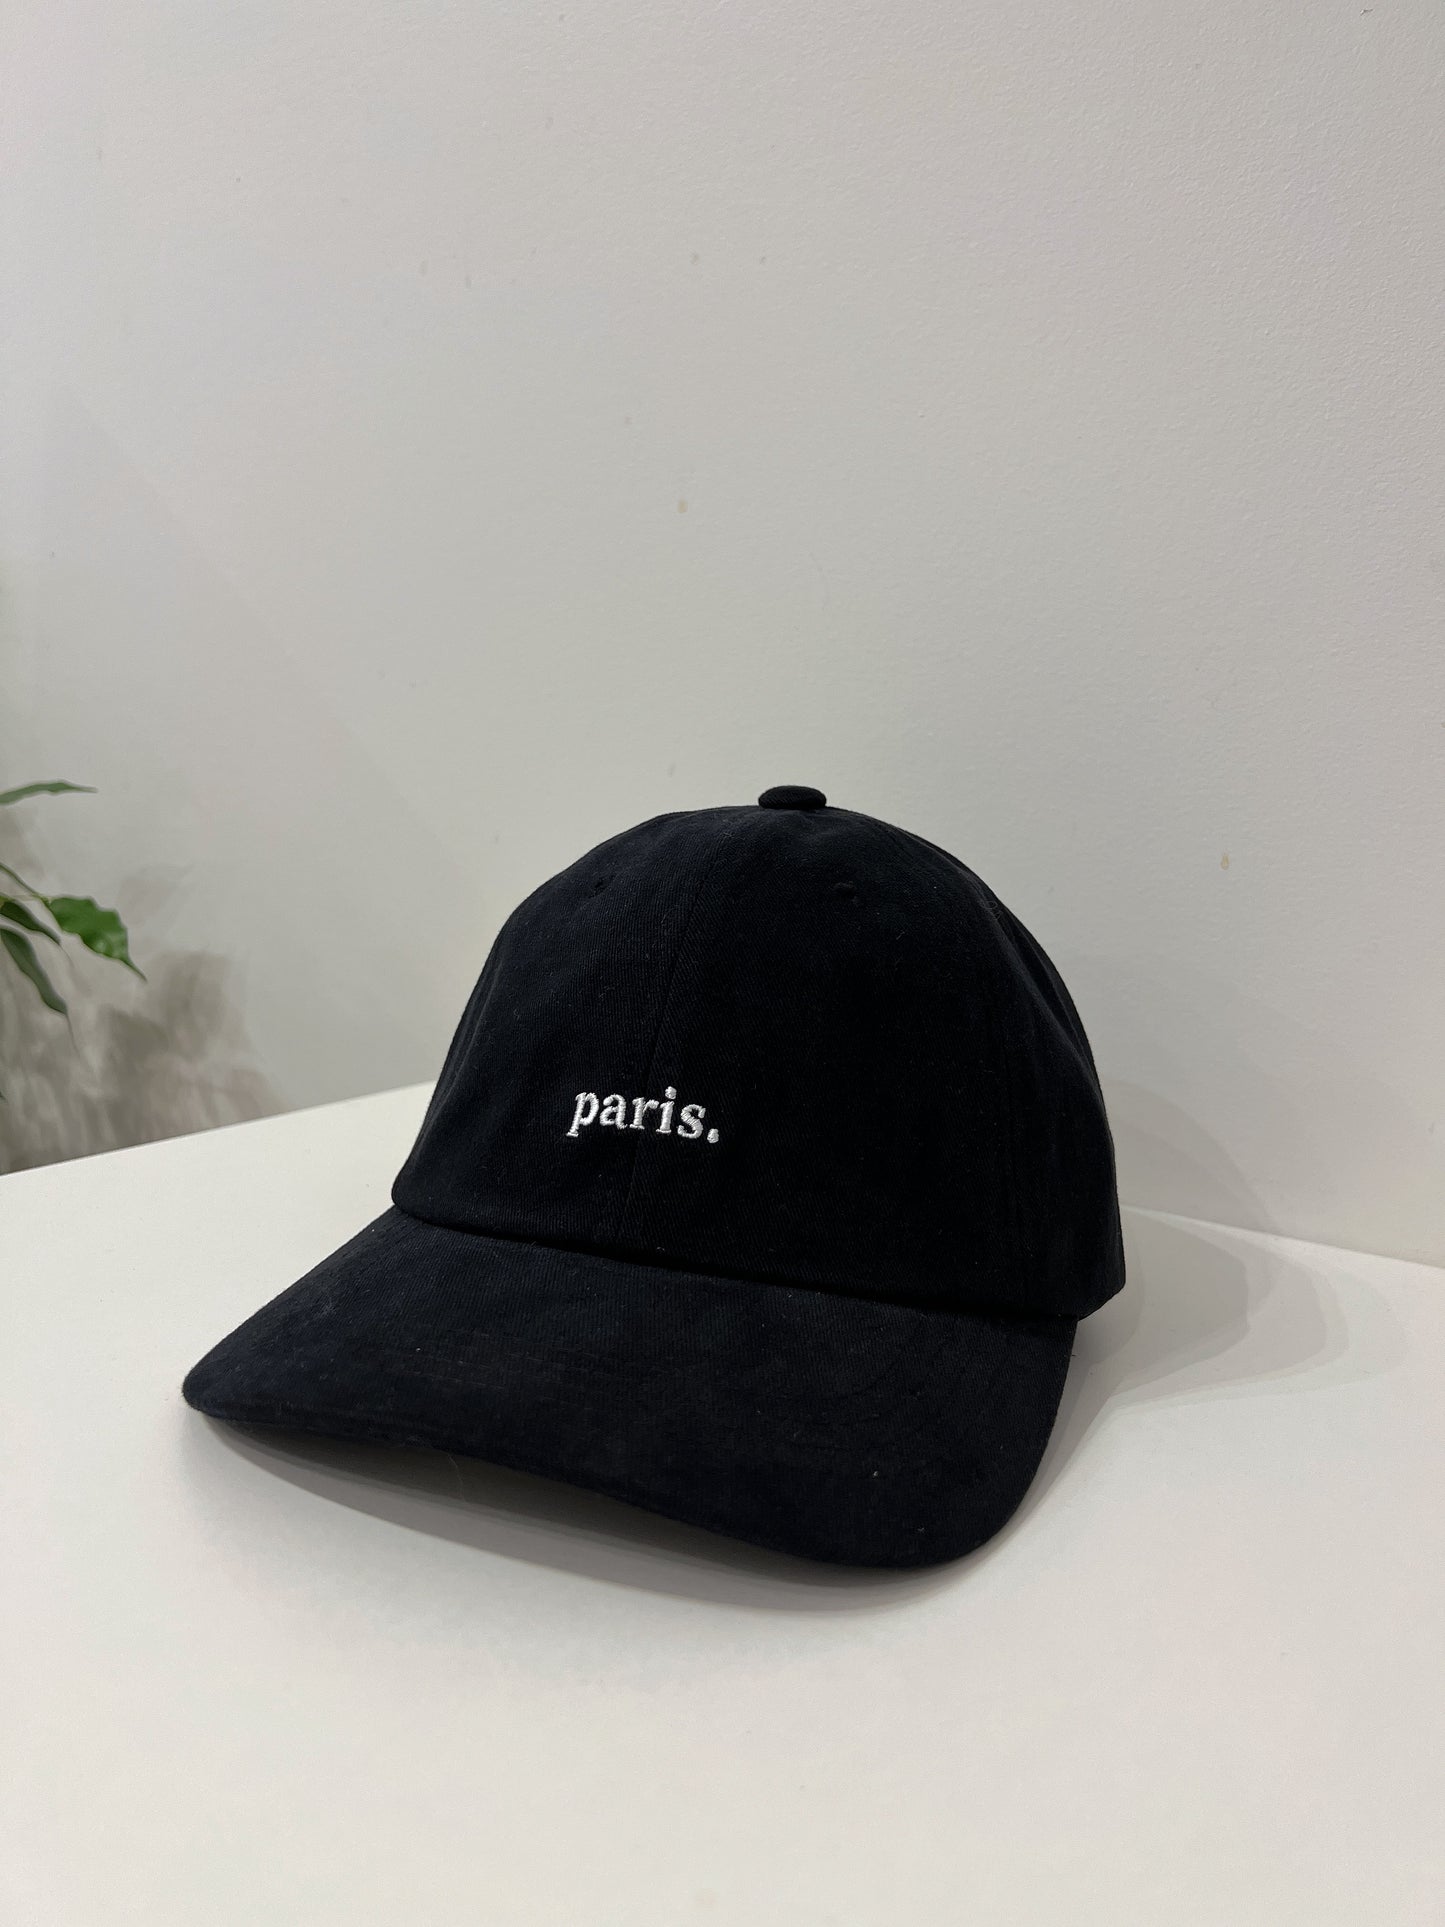 LANDY Paris ball cap